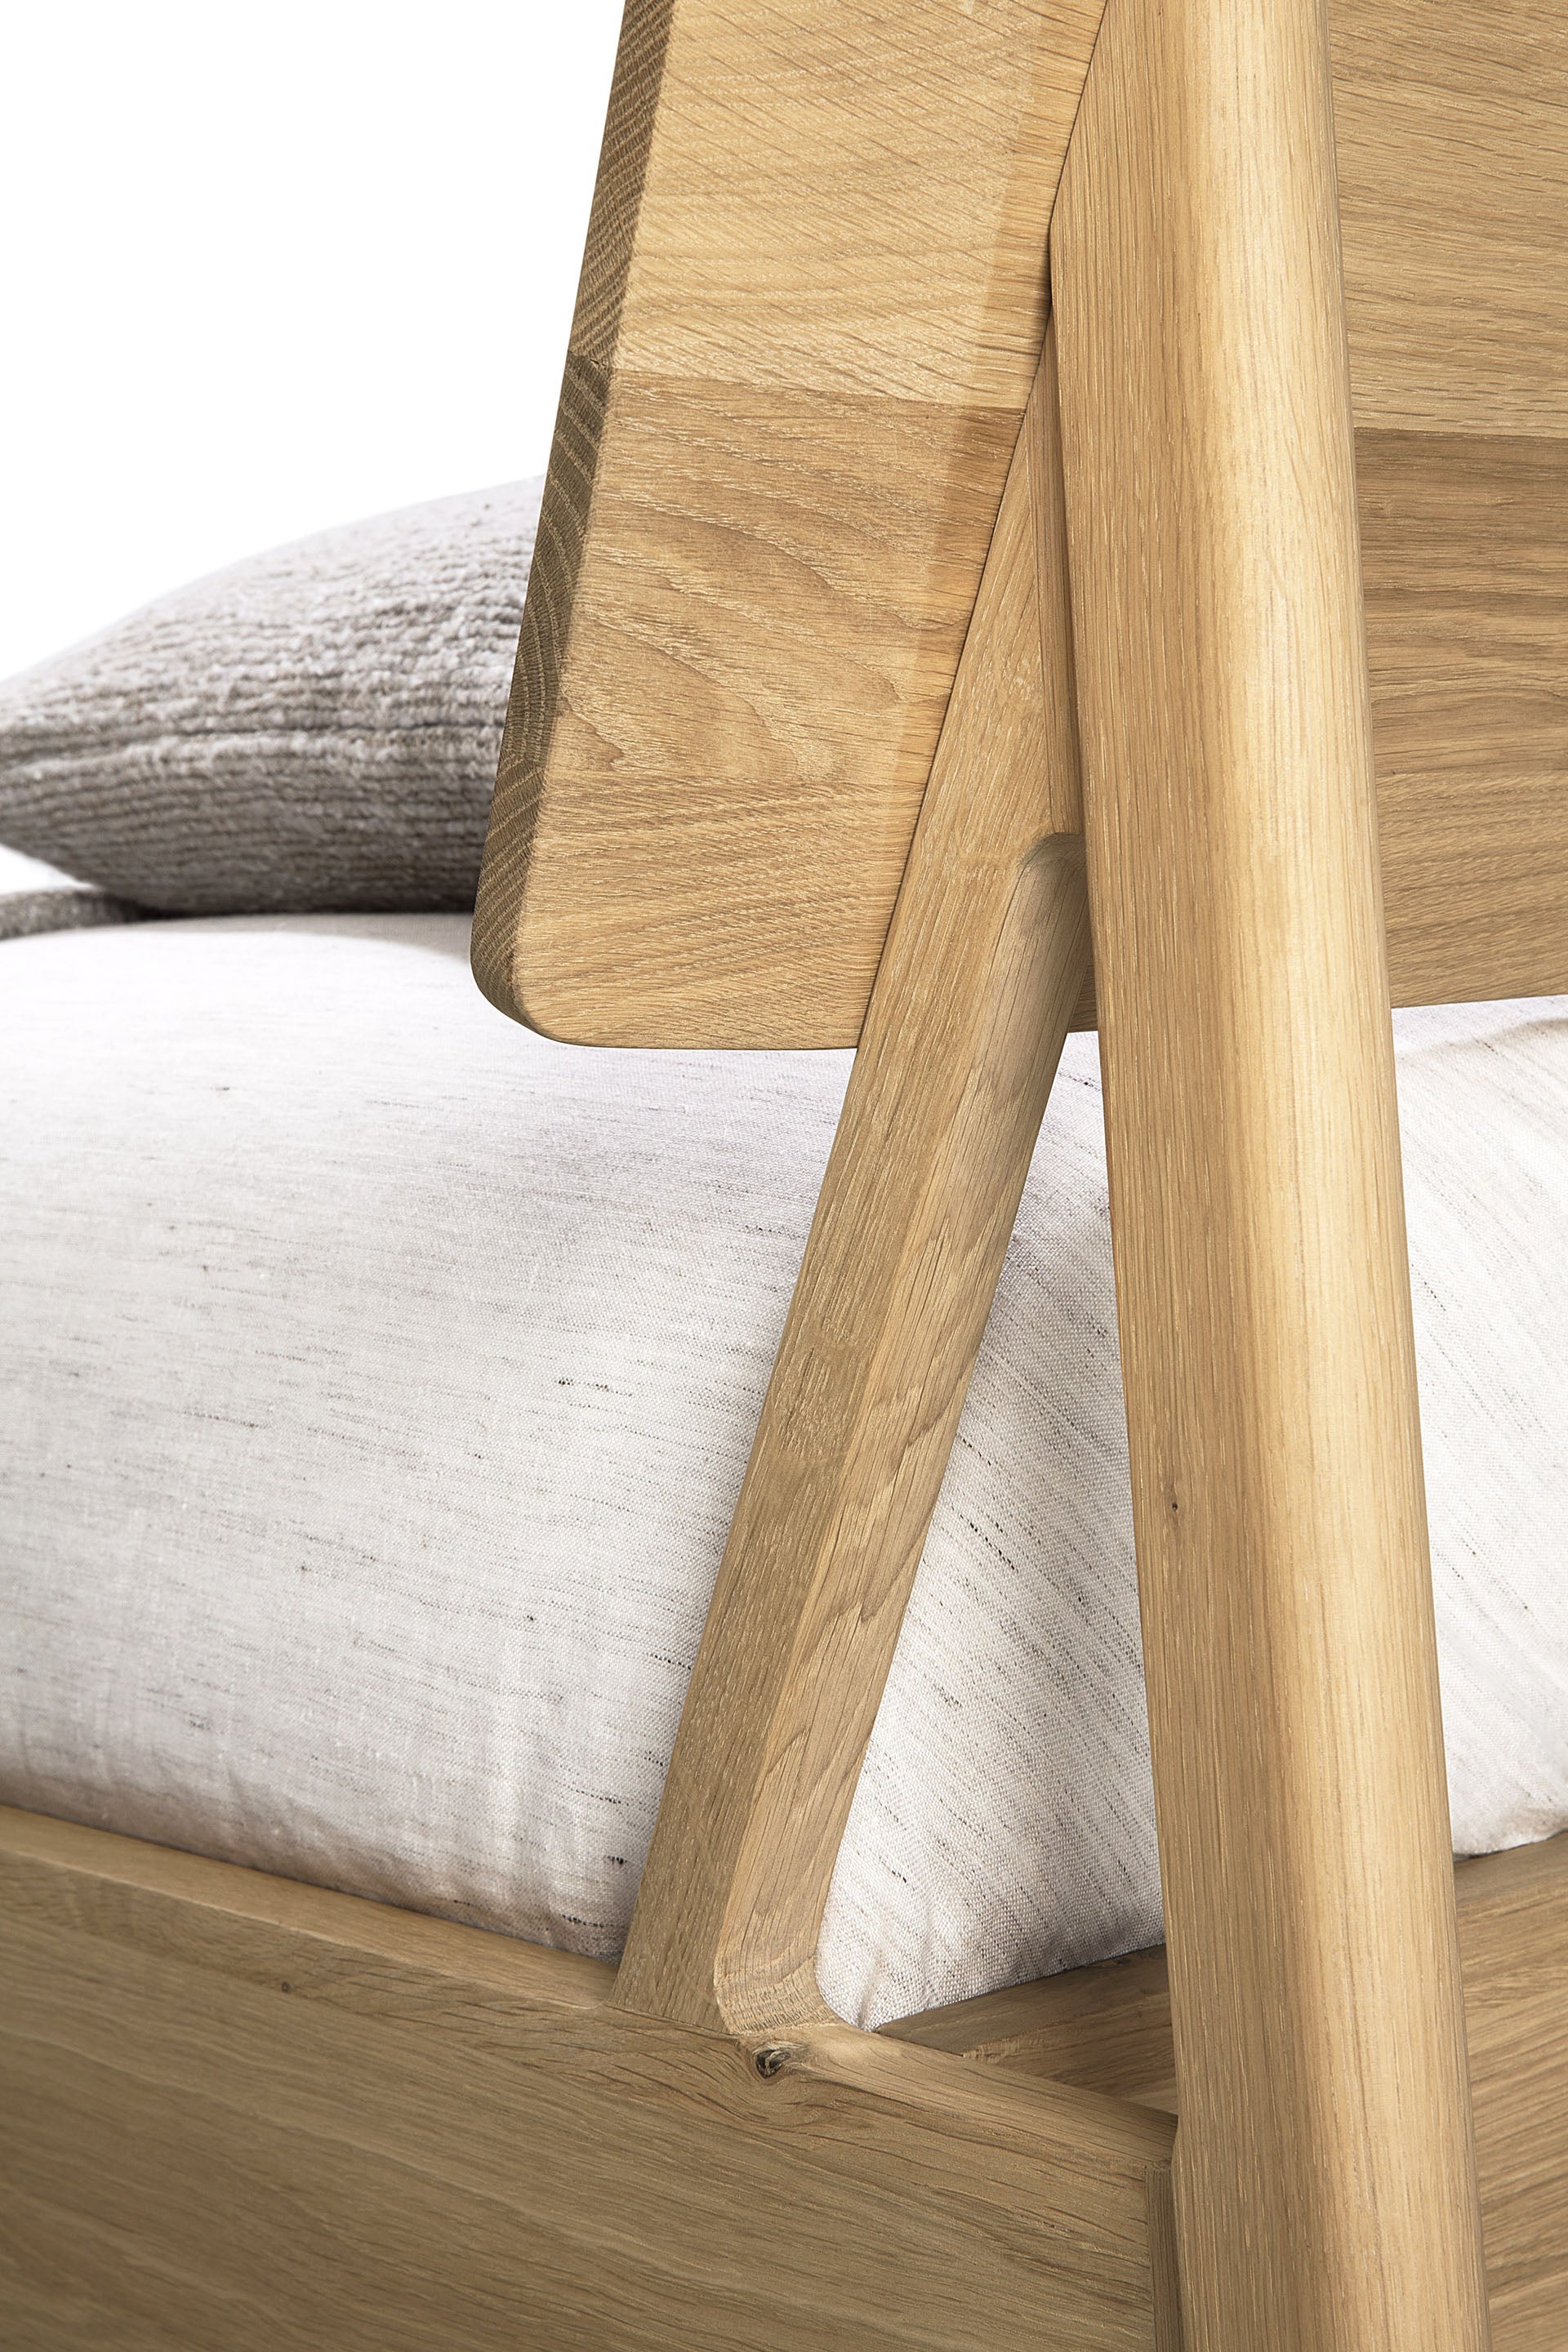 比利時原裝進口實木傢俬 - 臥室系列 - Air系列橡木床